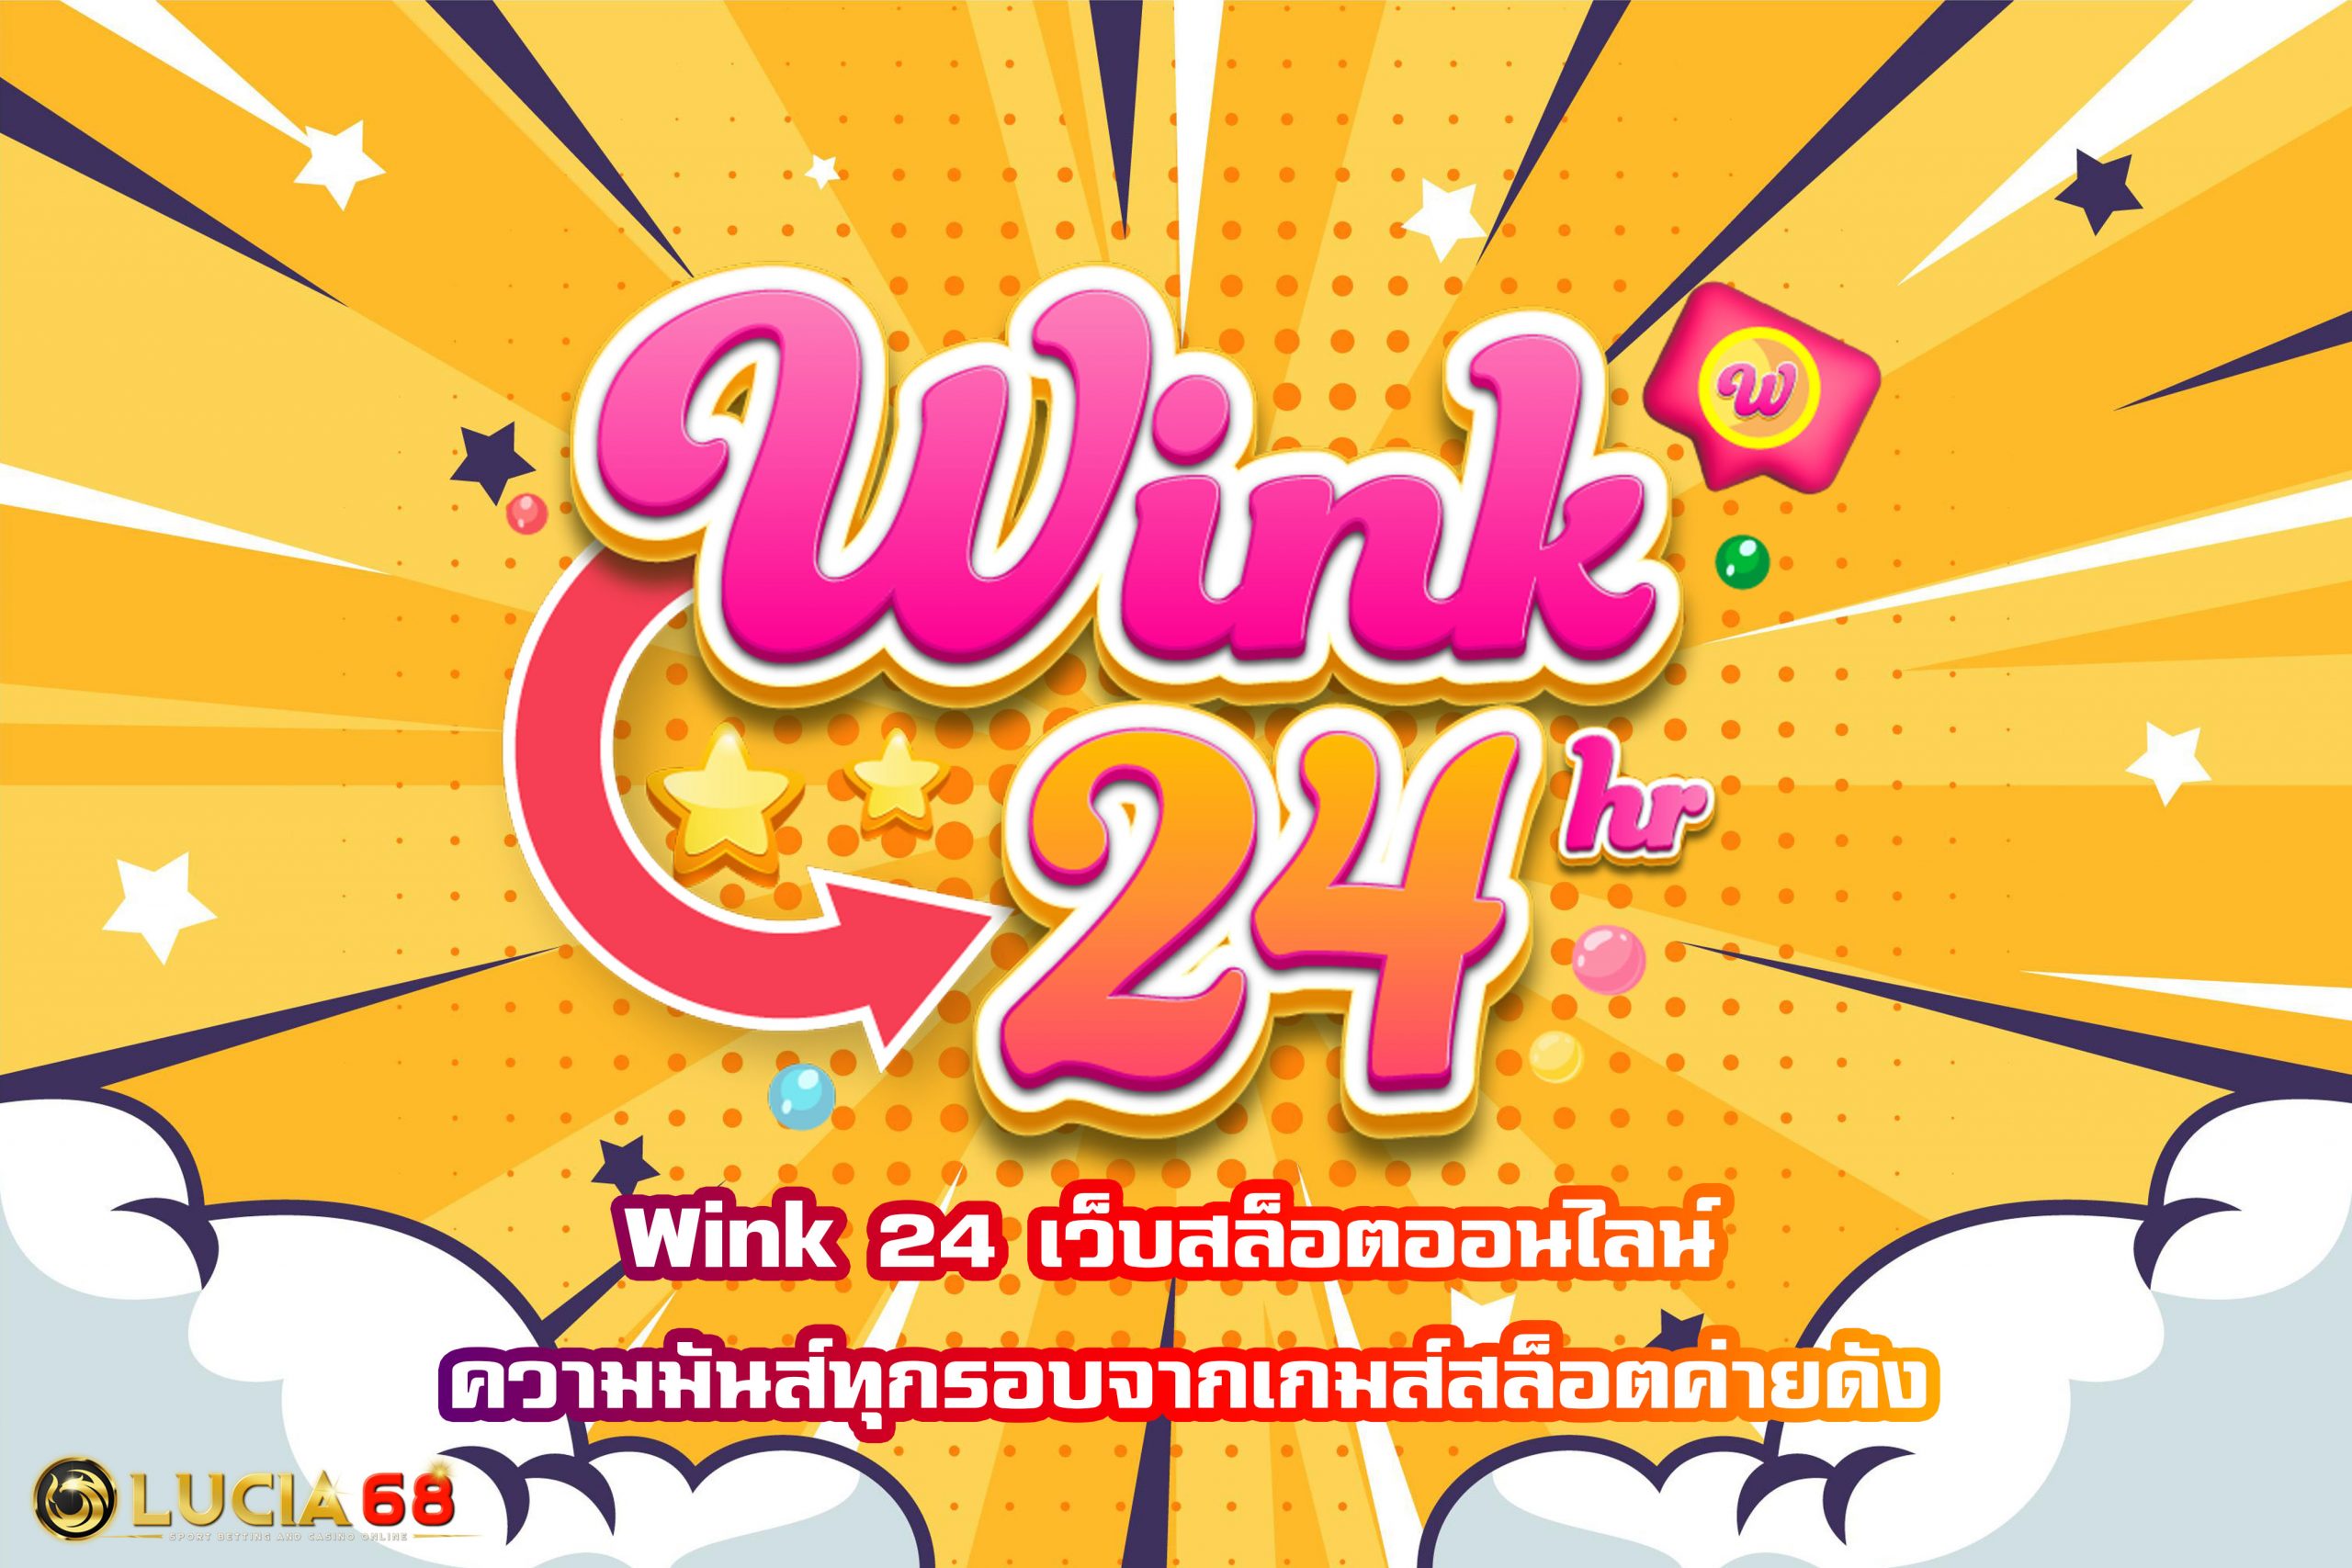 Wink 24 เว็บสล็อตออนไลน์ ความมันส์ทุกรอบจากเกมส์สล็อตค่ายดัง